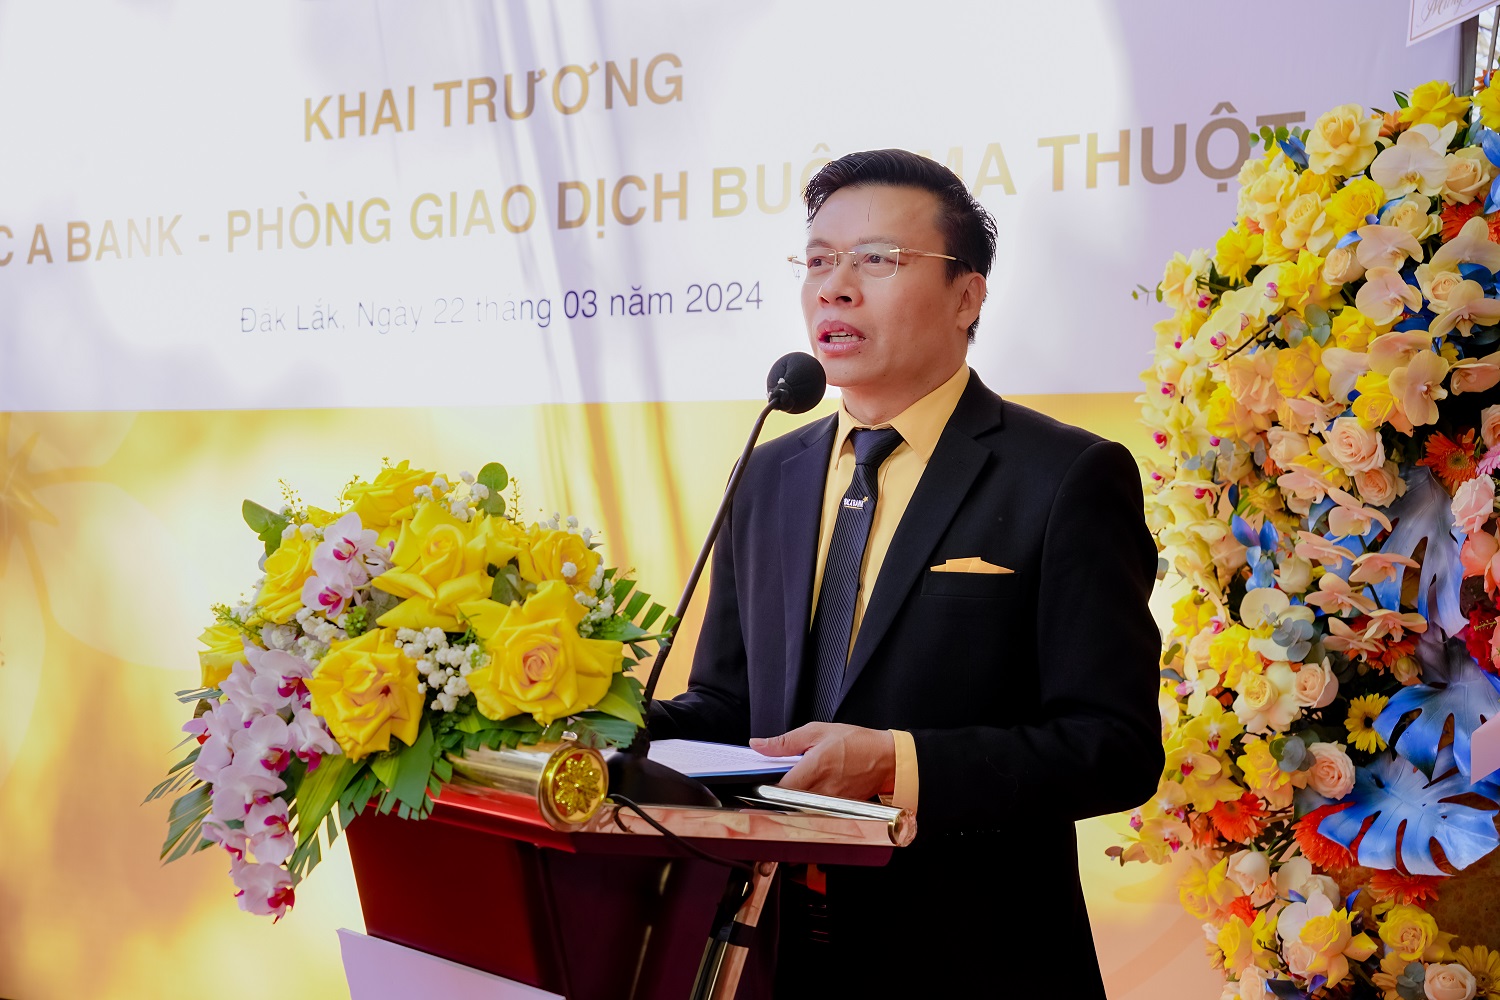 Ông Trần Ngọc Vân, Giám đốc BAC A BANK CN Đăk Lăk phát biểu tại buổi lễ